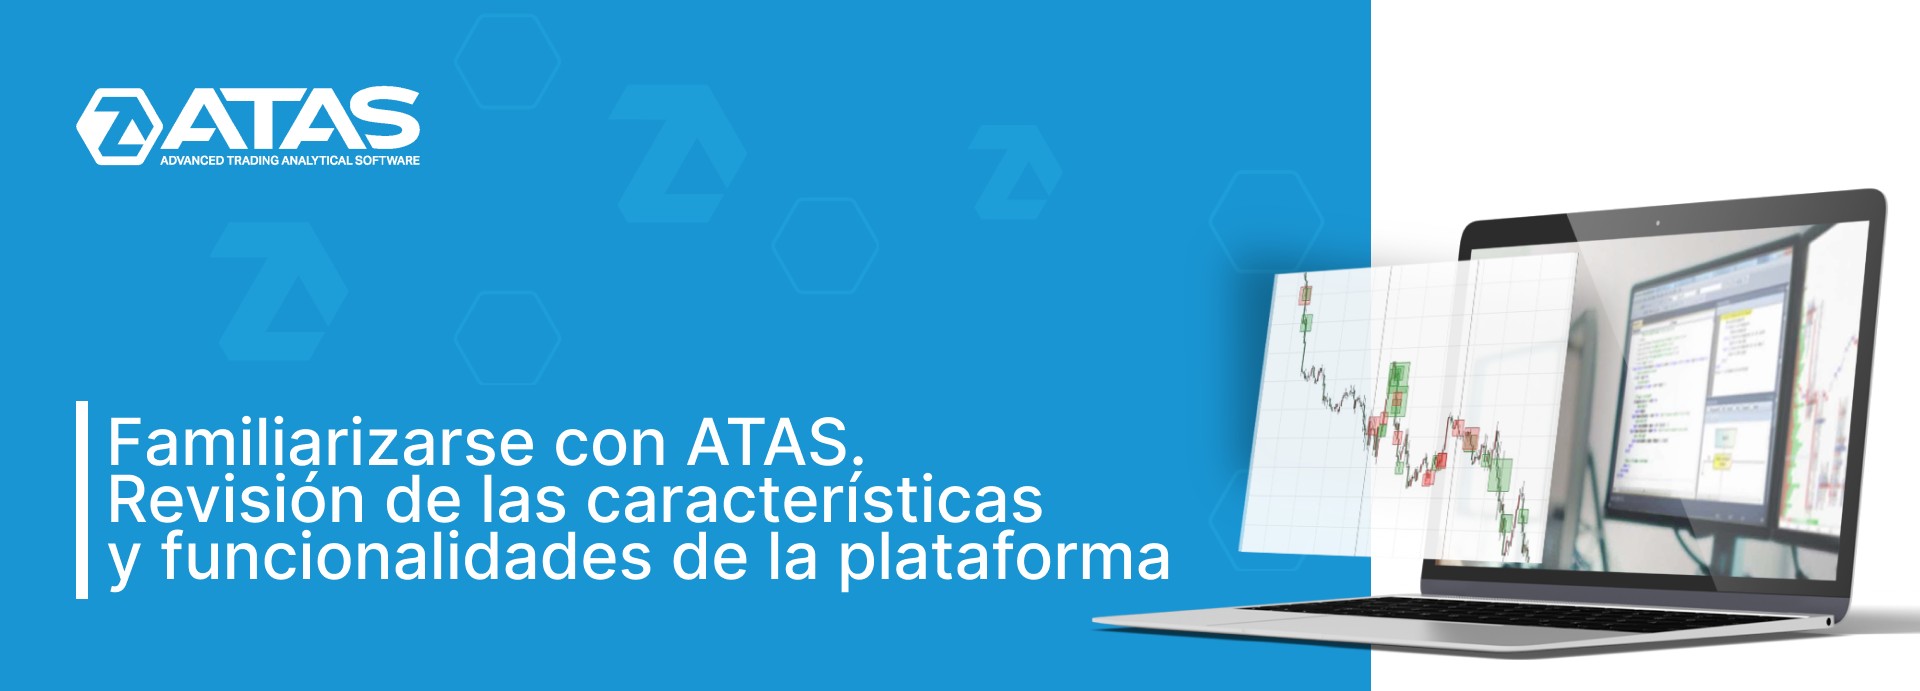 Familiarizarse con ATAS. Revisión de las características y funcionalidades de la plataforma